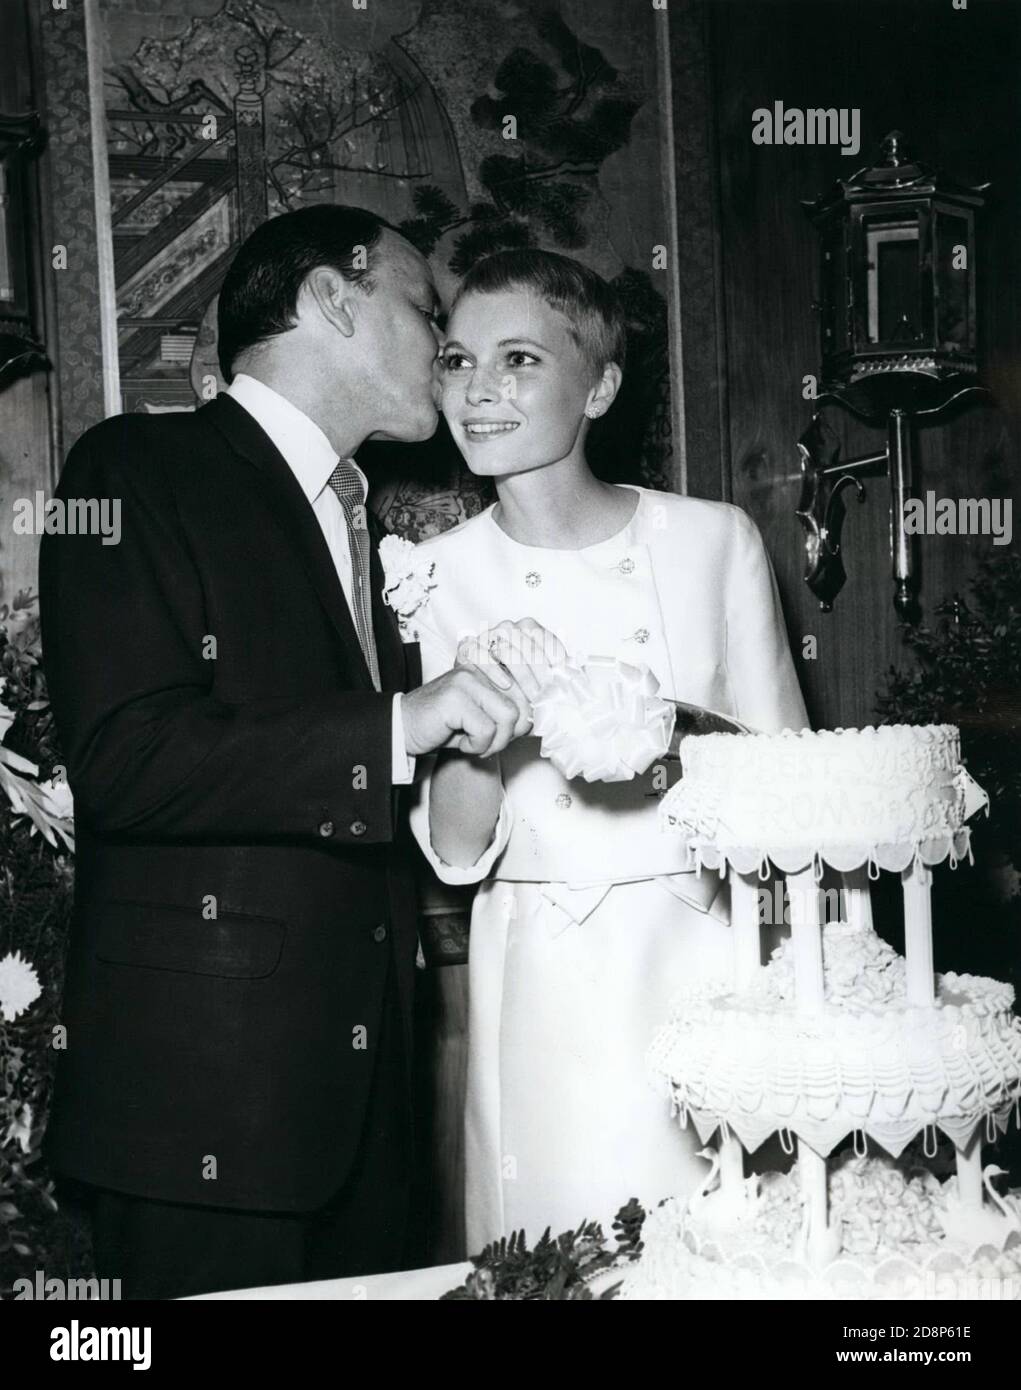 Julio 19, 1966 - las Vegas, Nevada - FRANK SINATRA, 50, izquierda, da a su nueva novia, MIA FARROW, 21, un beso mientras cortan la torta en su boda. (Imagen de crédito: © Keystone Press Agency/Keystone USA via ZUMAPRESS.com) Foto de stock